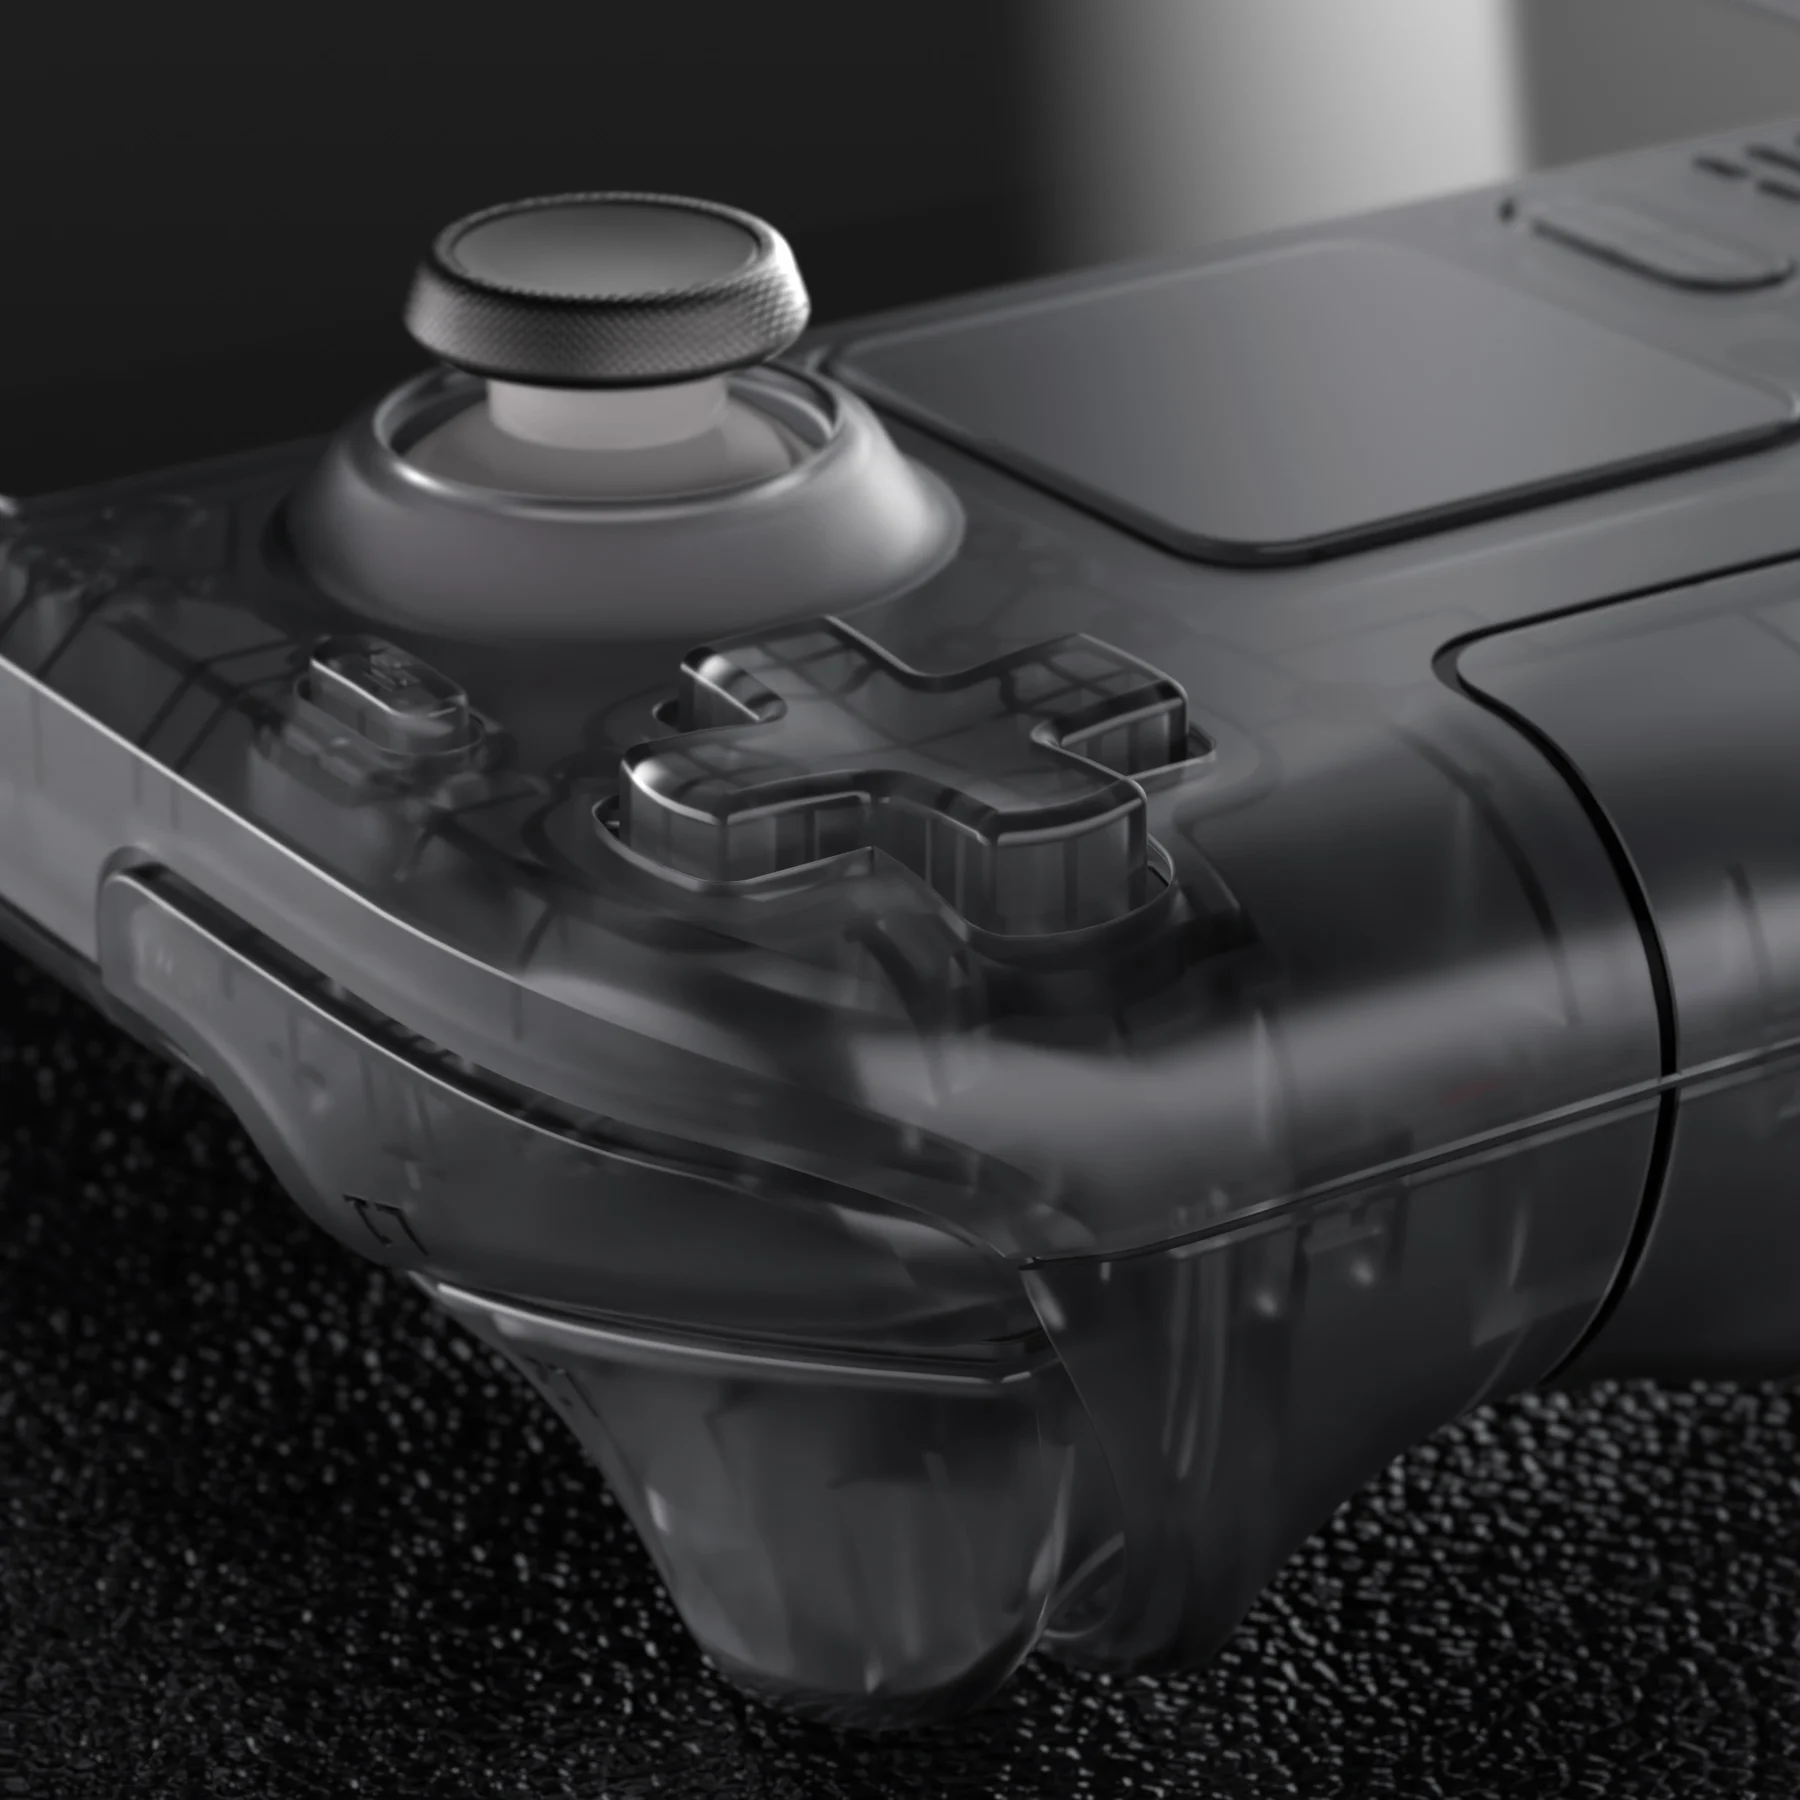 eXtremeRate Juego completo de botones de carcasa para controlador Xbox  Series X y S, accesorios de repuesto transparentes, empuñaduras de rieles